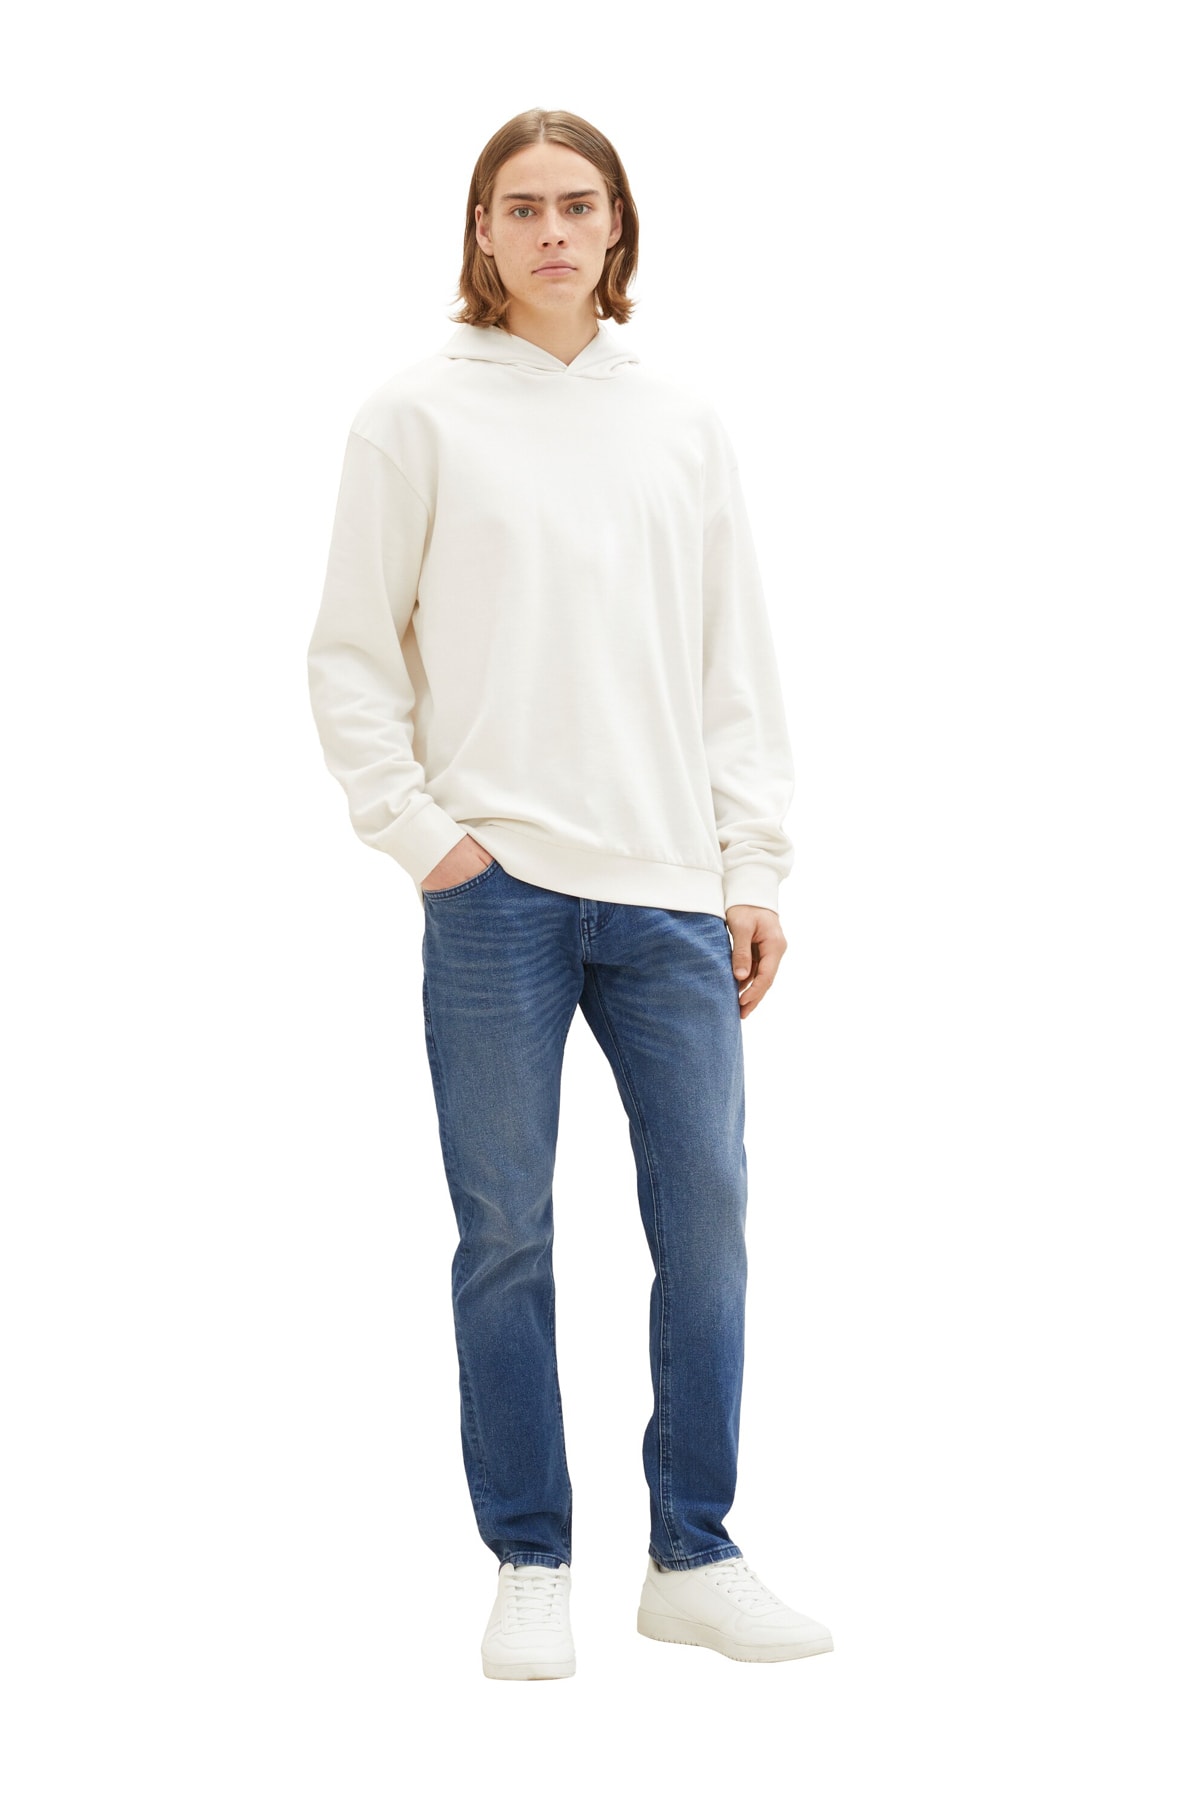 Джинсы - Серые - Прямые Tom Tailor Denim, серый джинсы denim fashion серые 40 размер новые